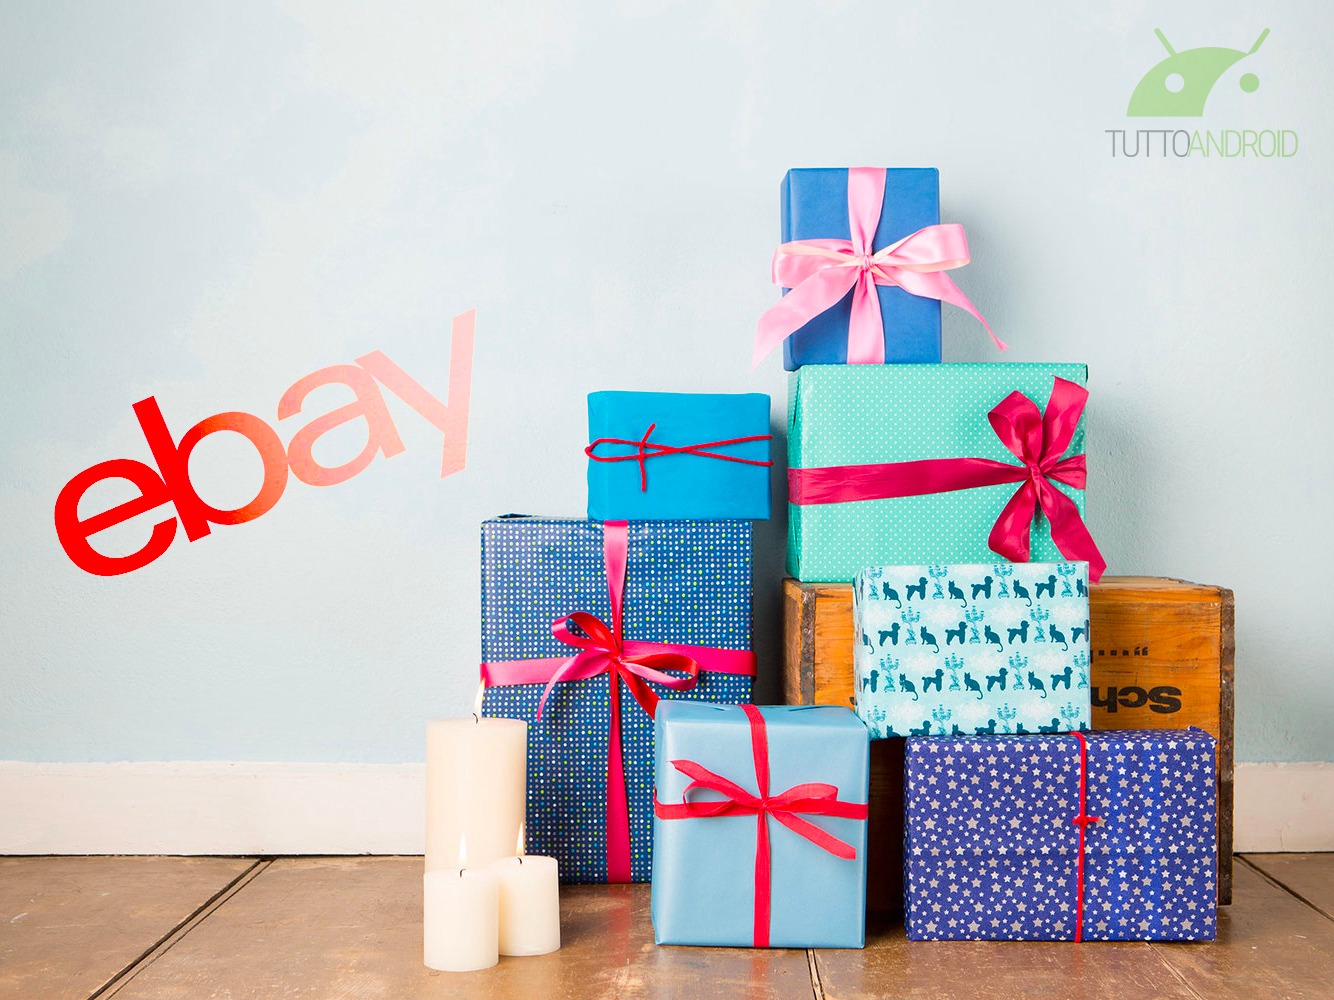 Ebay Regali Di Natale.Tanti Gadget Tech In Offerta Su Ebay Per Regali Di Natale A Basso Costo